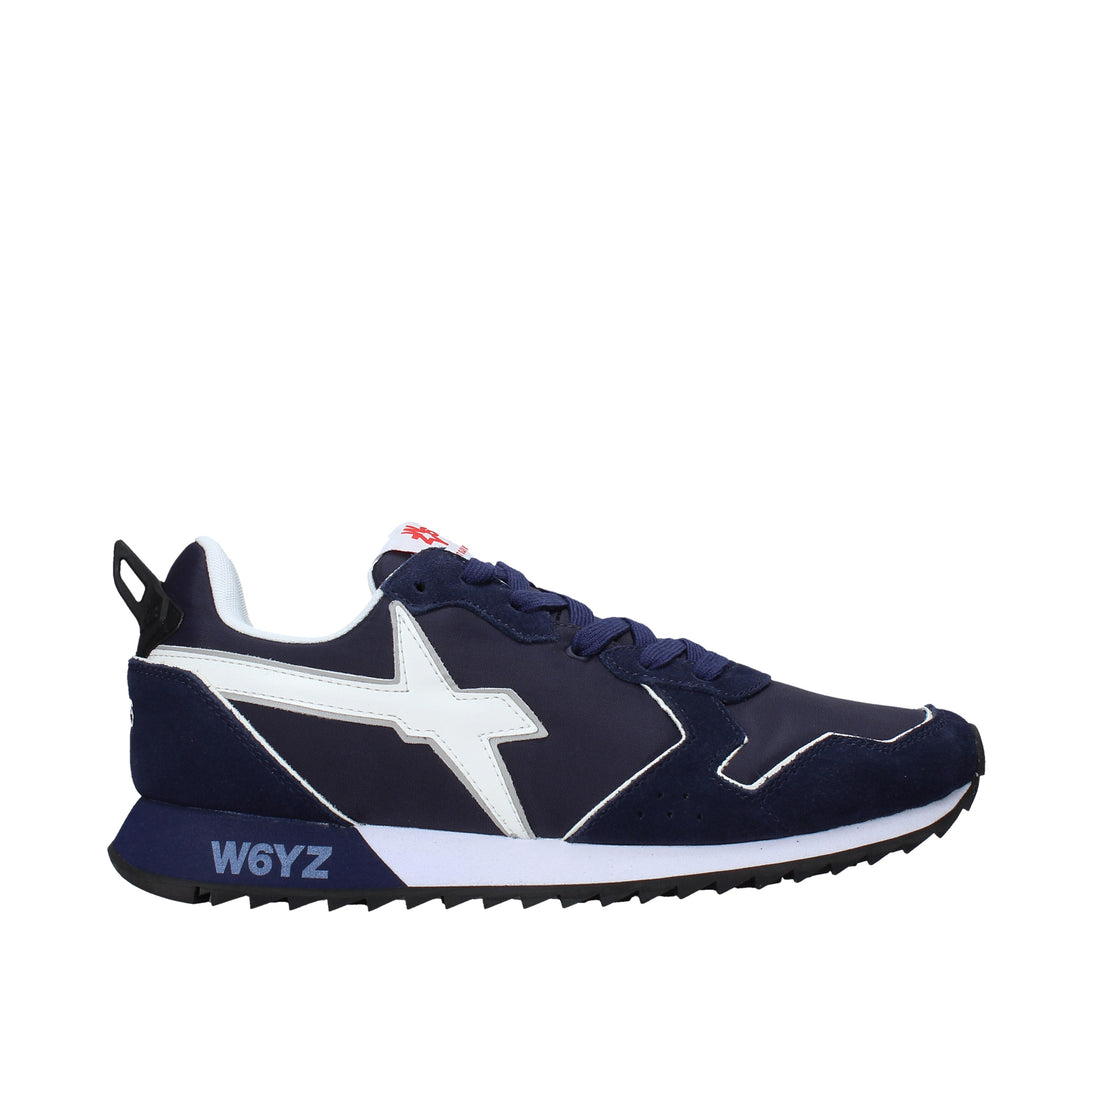 Sneakers Blu Navy W6yz